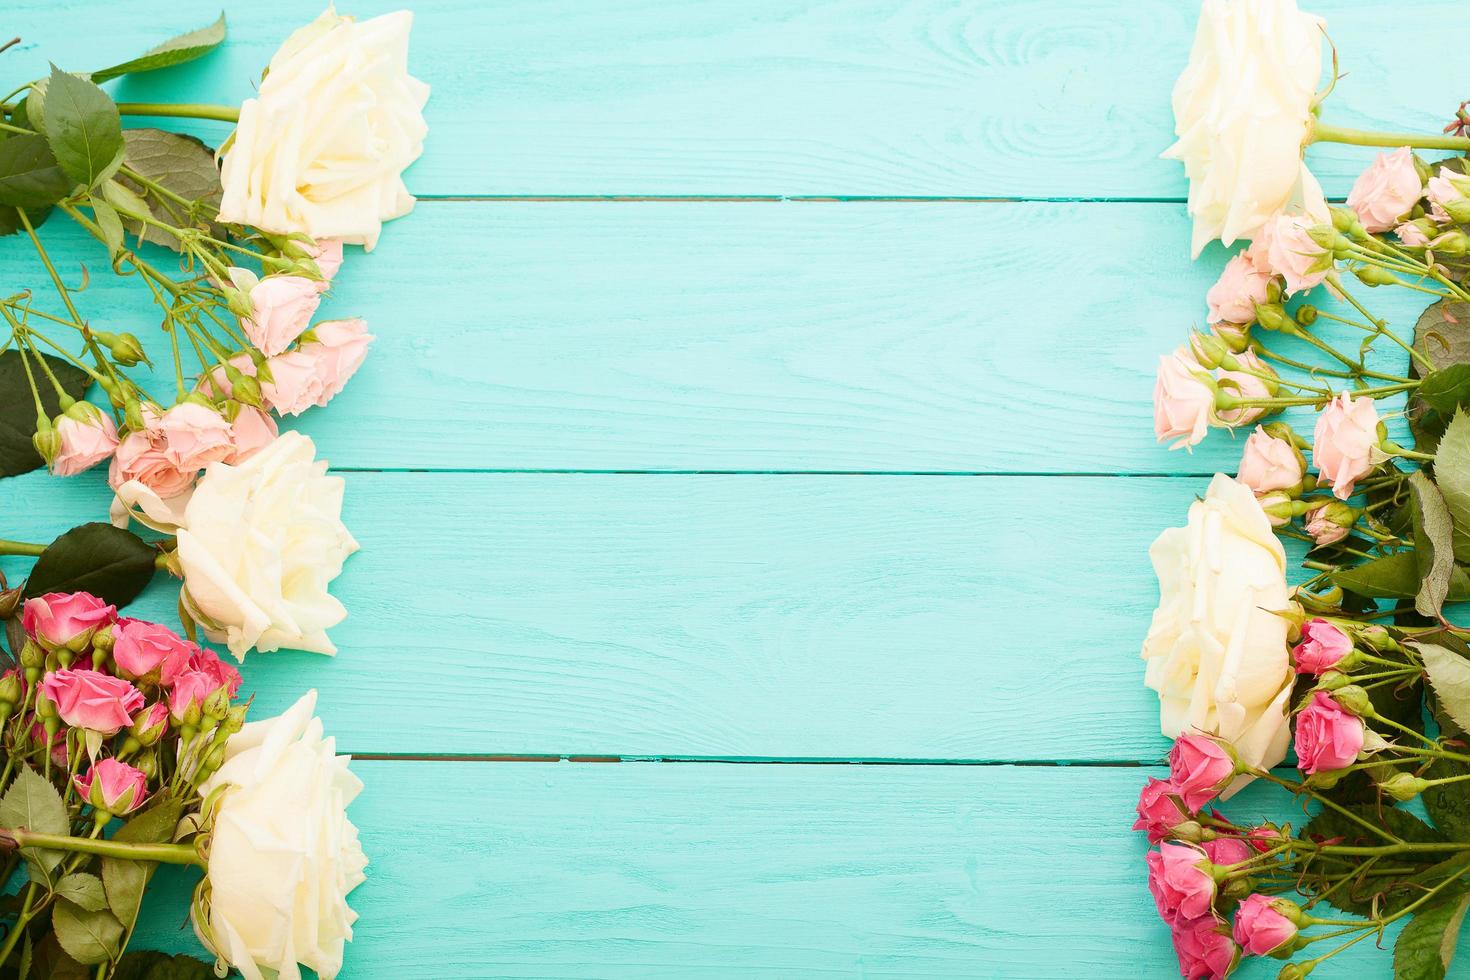 zomer witte rozen op blauwe houten achtergrond met kopie ruimte. bovenaanzicht. spotten. moeder valentijn dag. bruiloft concept foto